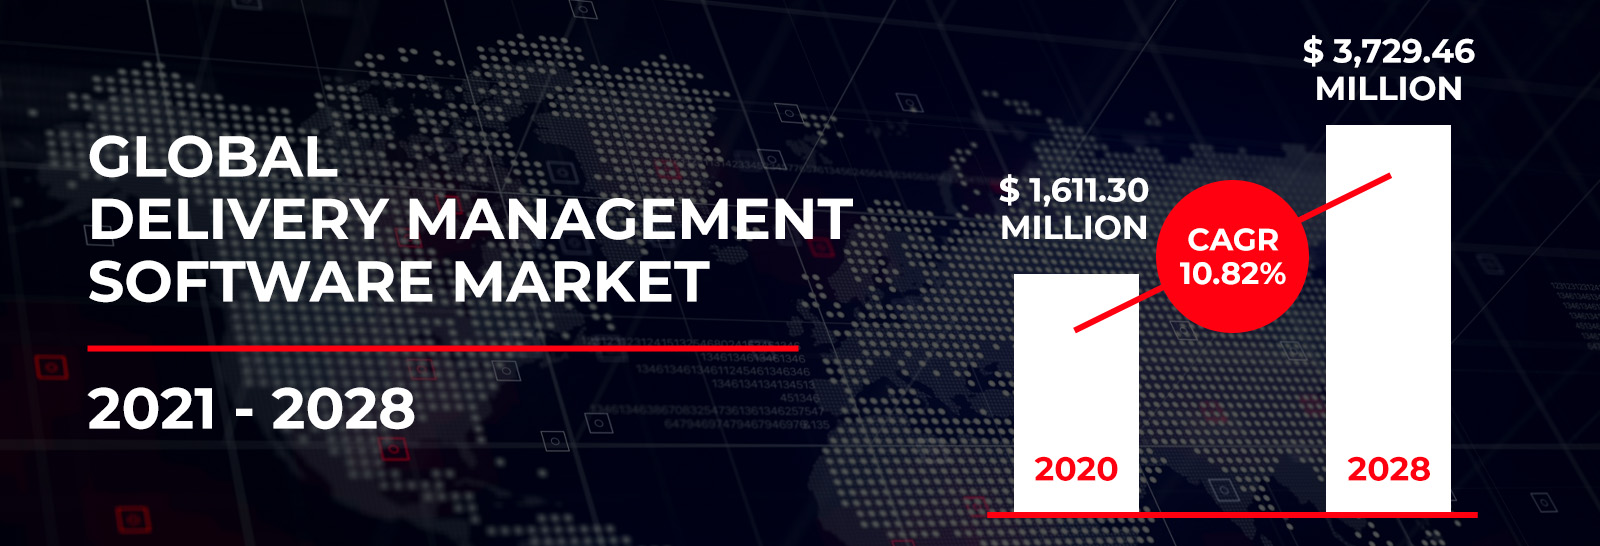 Global Delivery Management Software Market Size